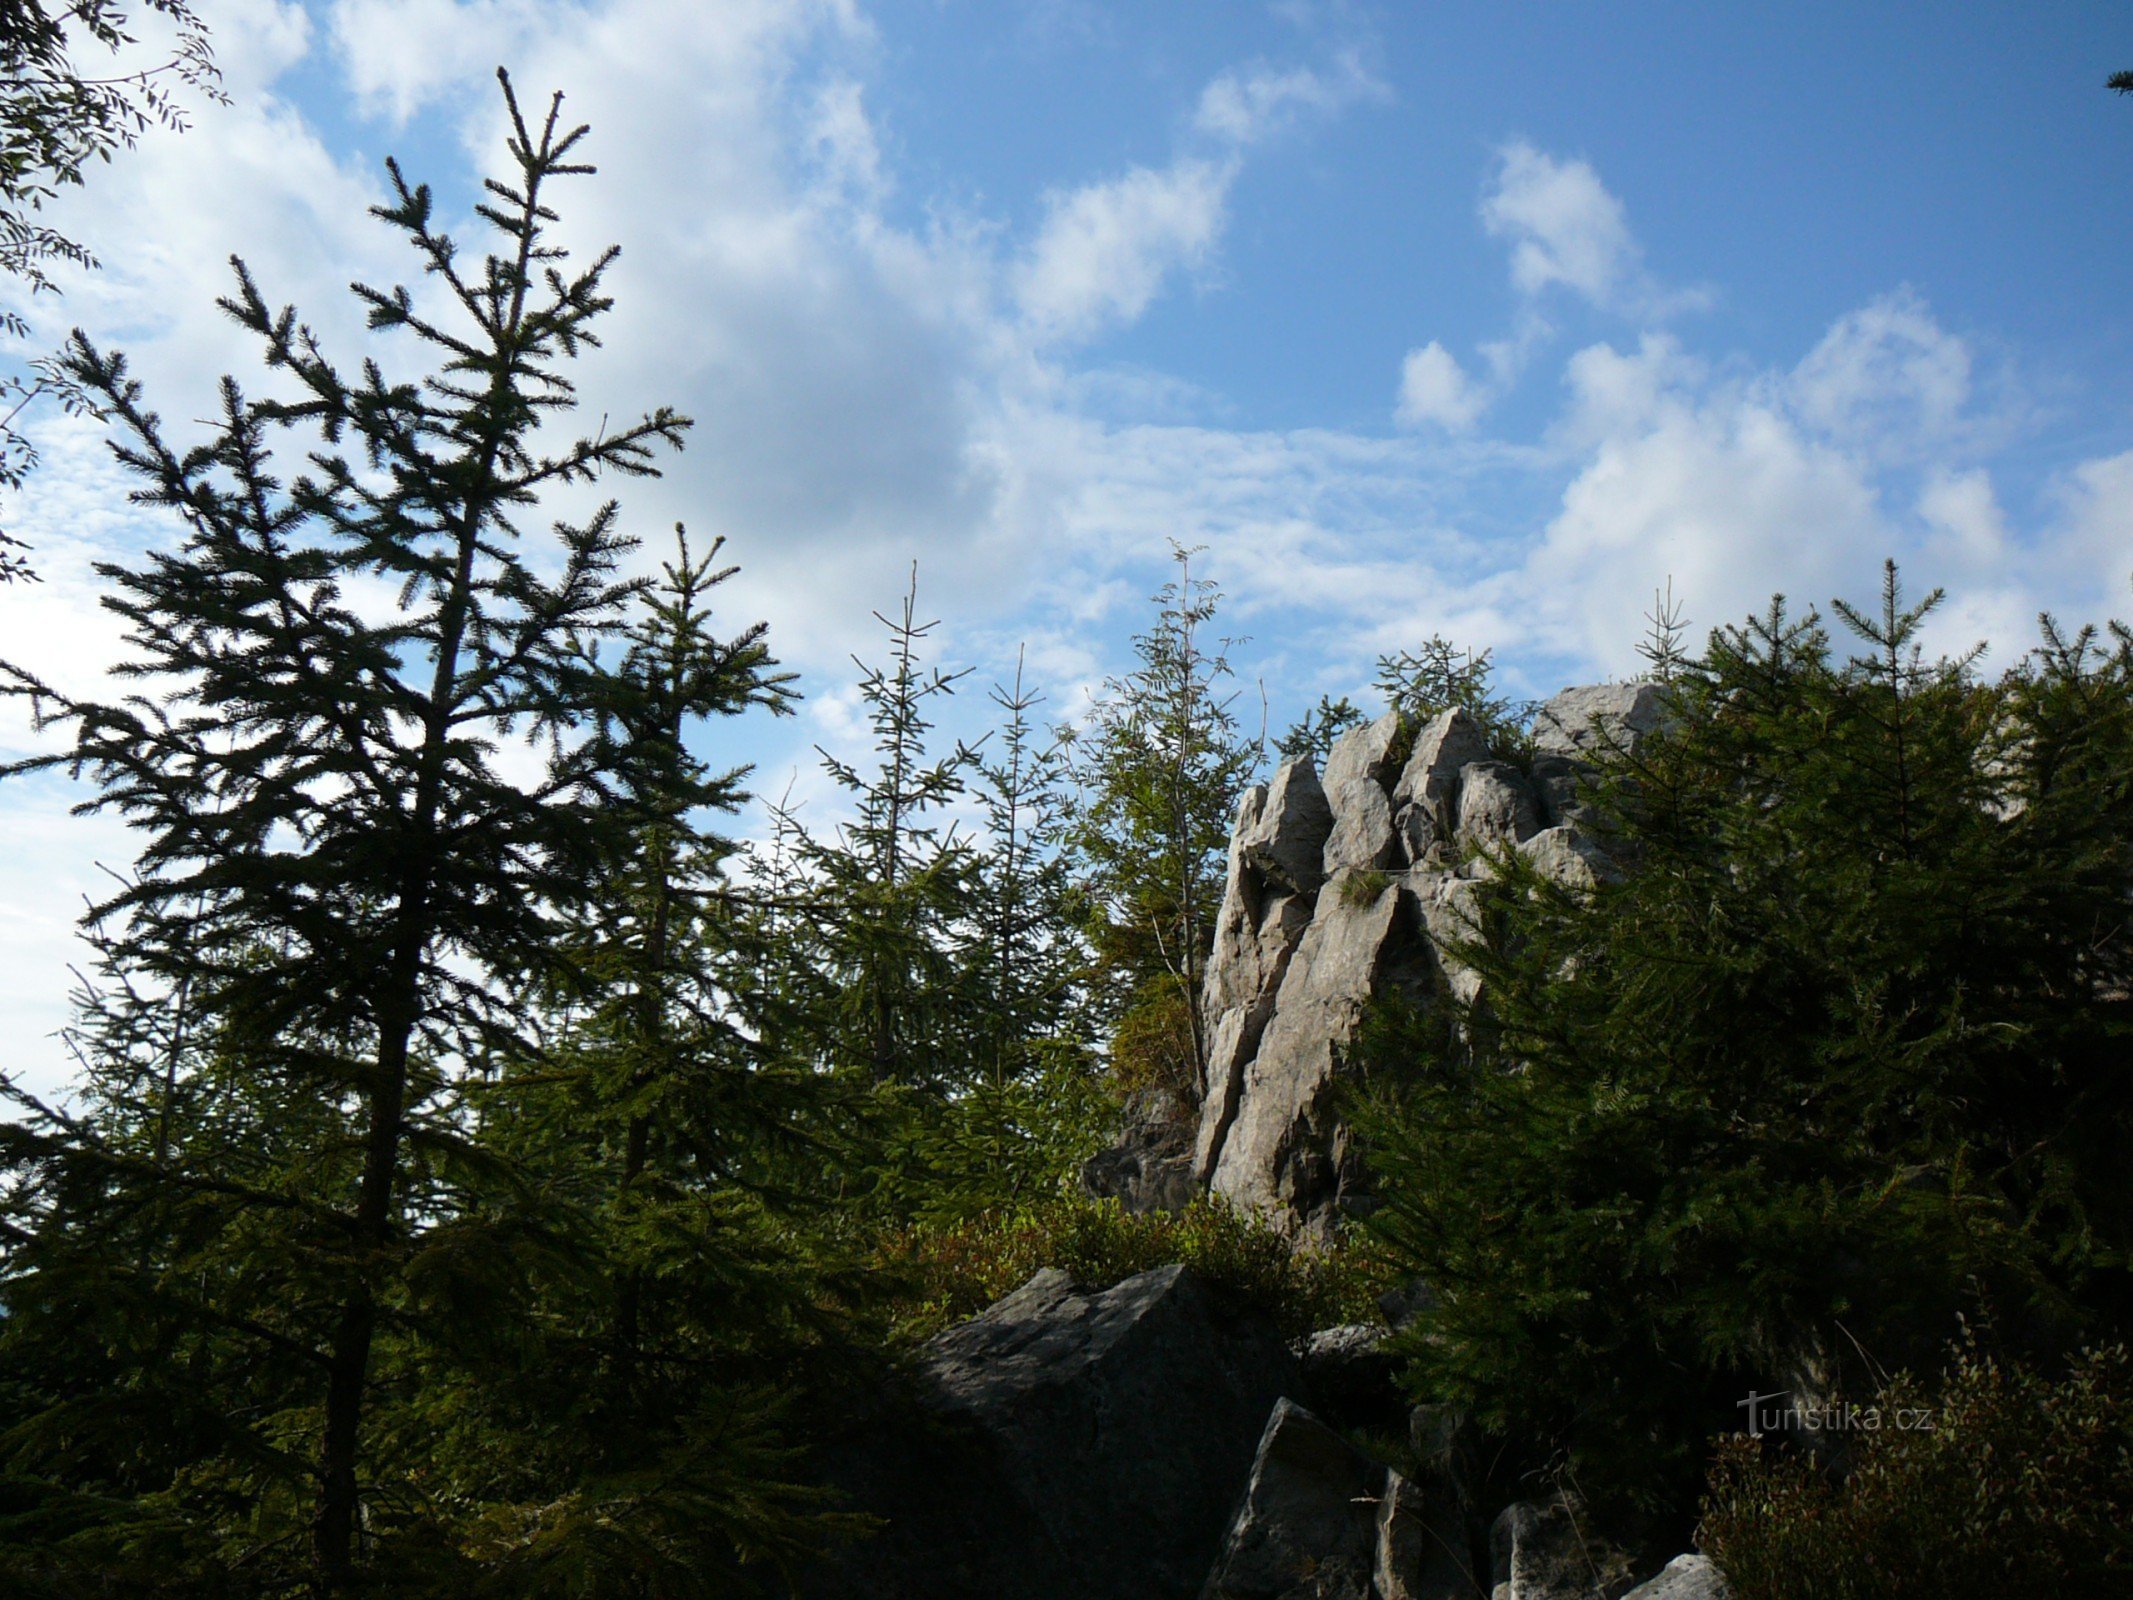 Upper Fox Rocks